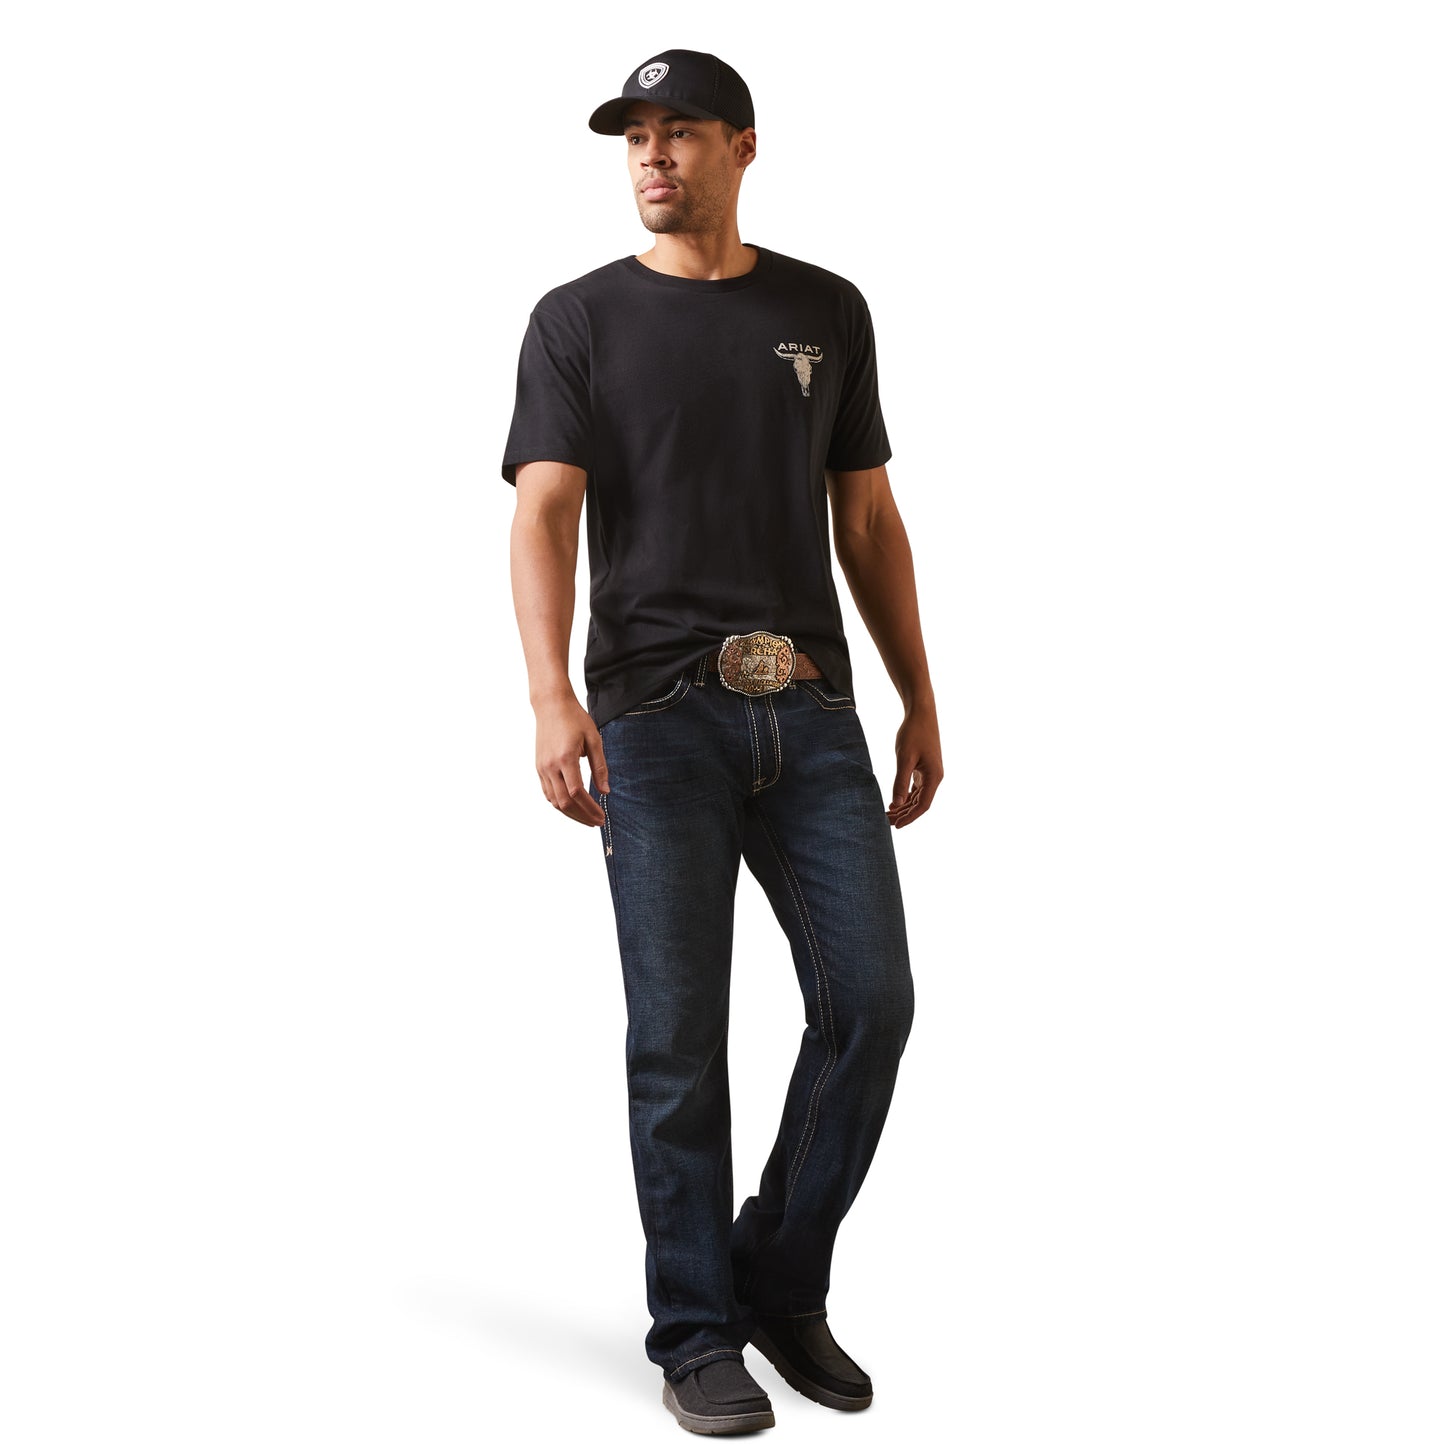 Ariat® Men's Steer Skull Flag Black Graphic T-Shirt 10044770